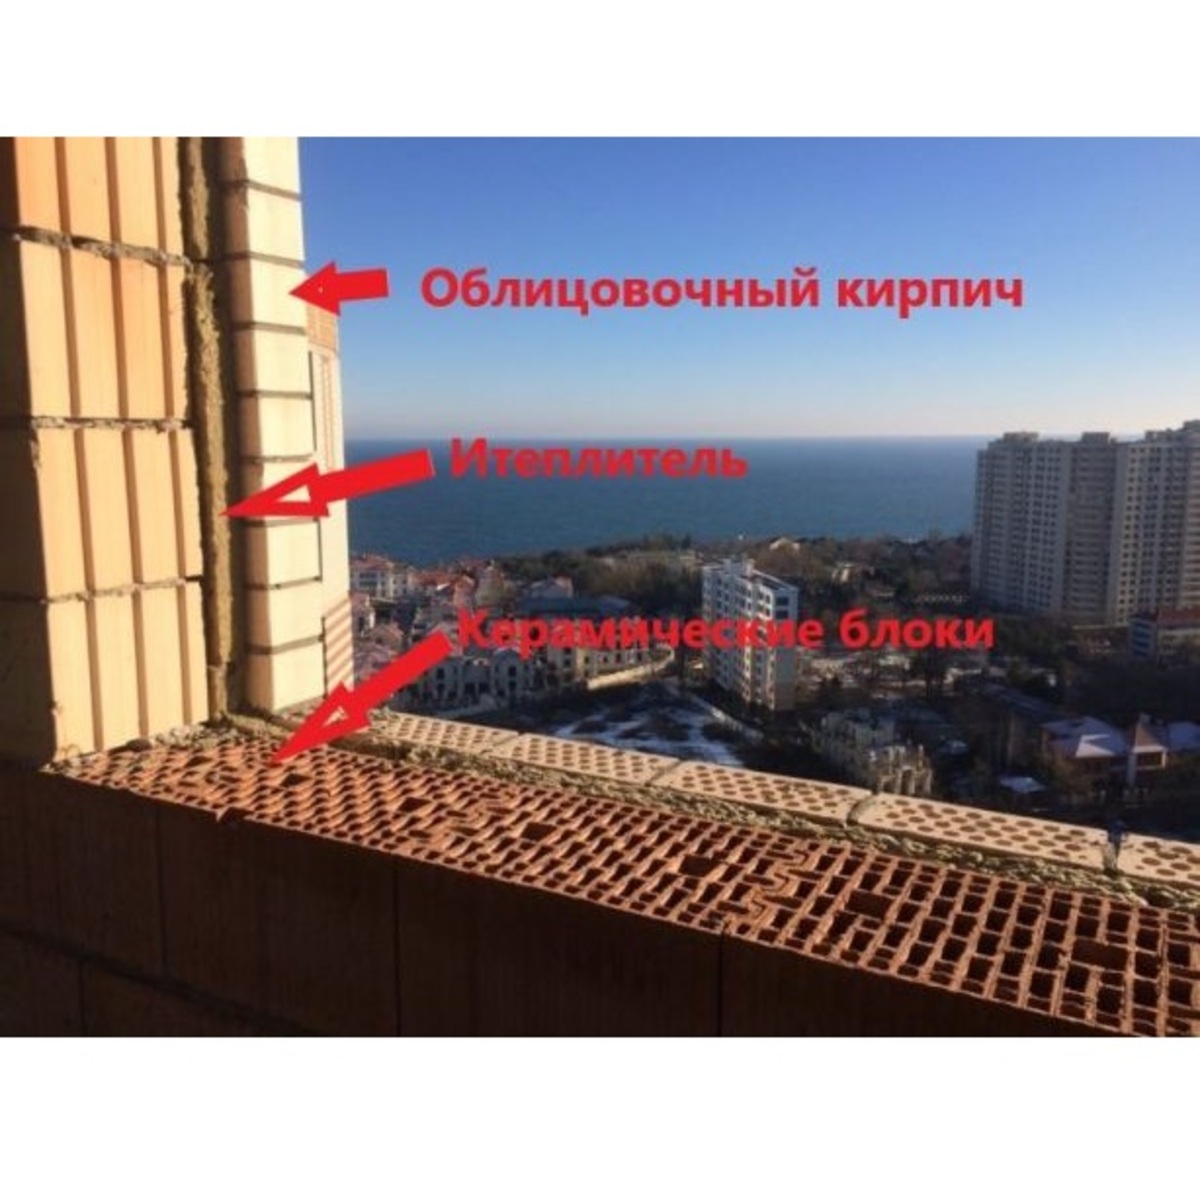 3-комнатная квартира в Приморском районе с видом на море.